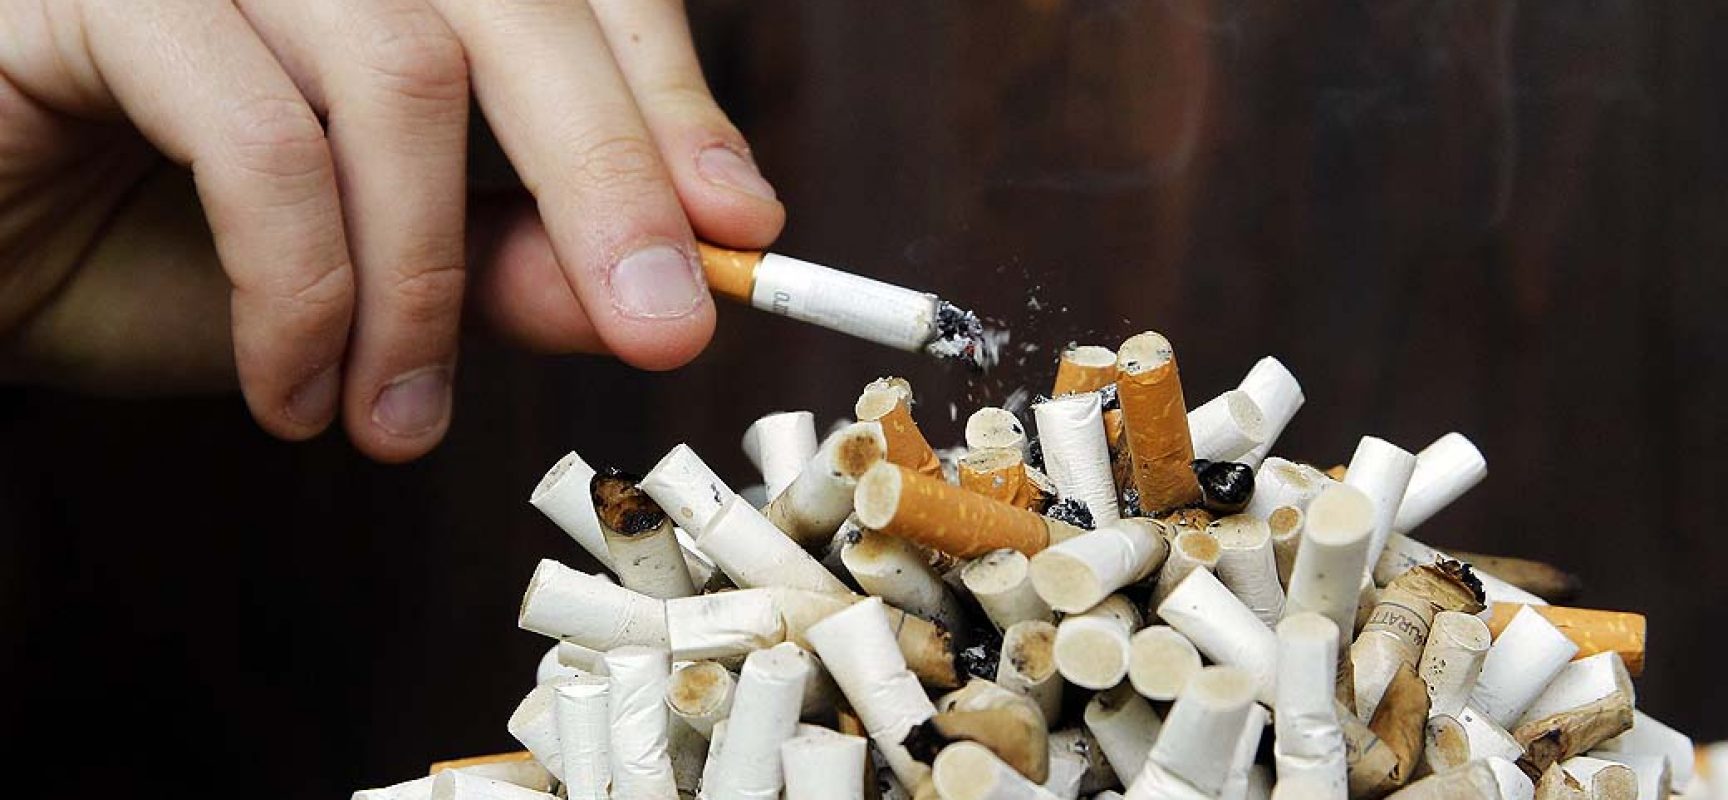 Brasil reduz em 44,6% número de fumantes passivos no trabalho